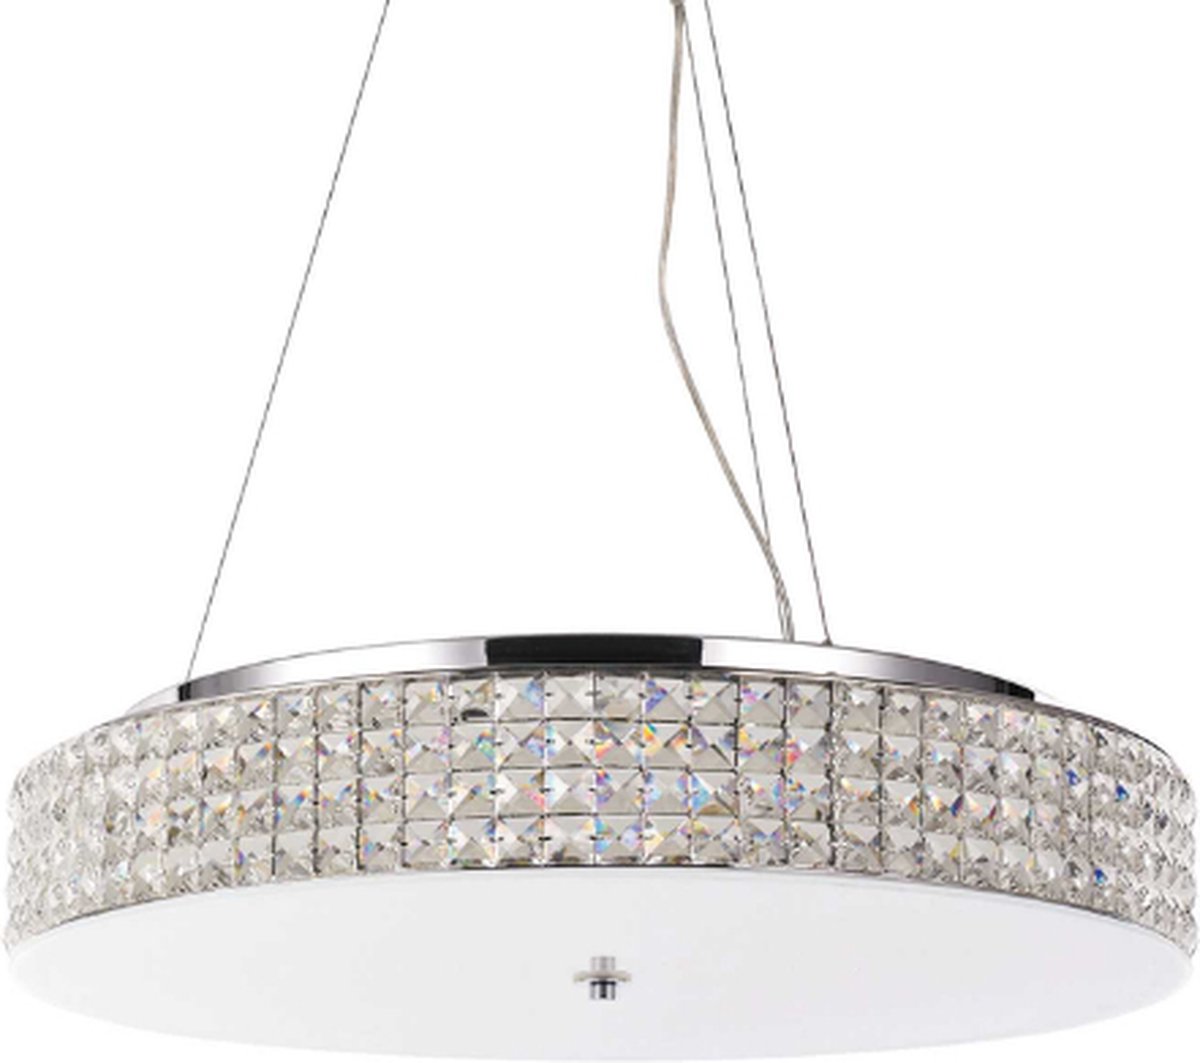 Ideal Lux - Roma - Hanglamp - Metaal - G9 - Wit - Voor binnen - Lampen - Woonkamer - Eetkamer - Keuken